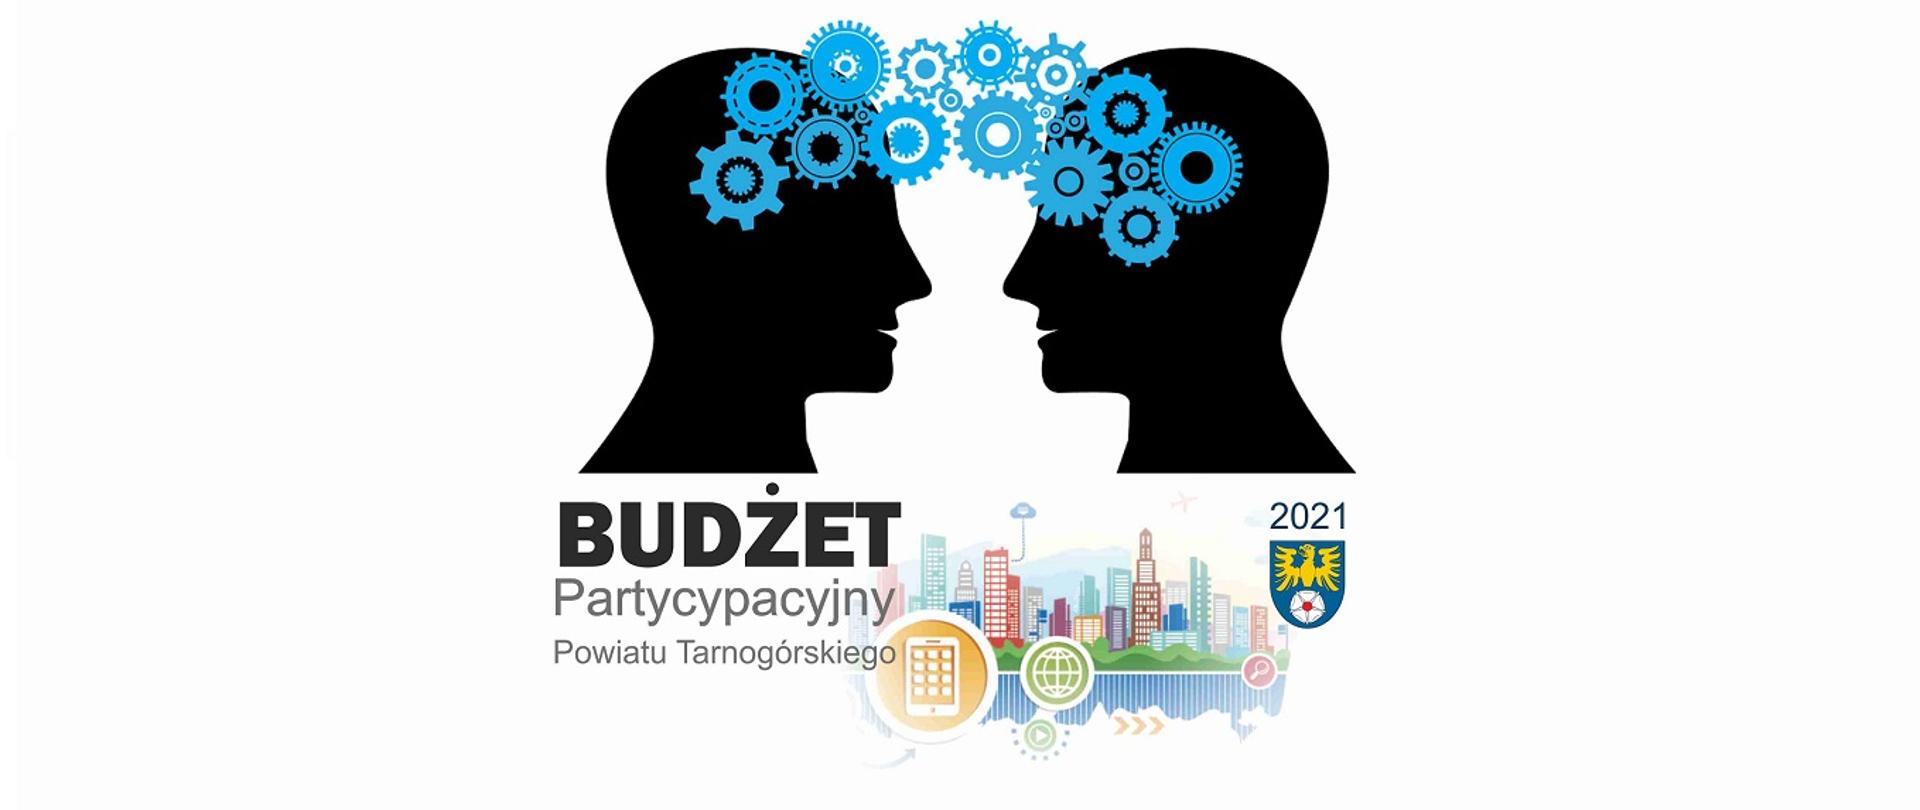 Grafika promująca Budżet Partycypacyjny Powiatu Tarnogórskiego 2021